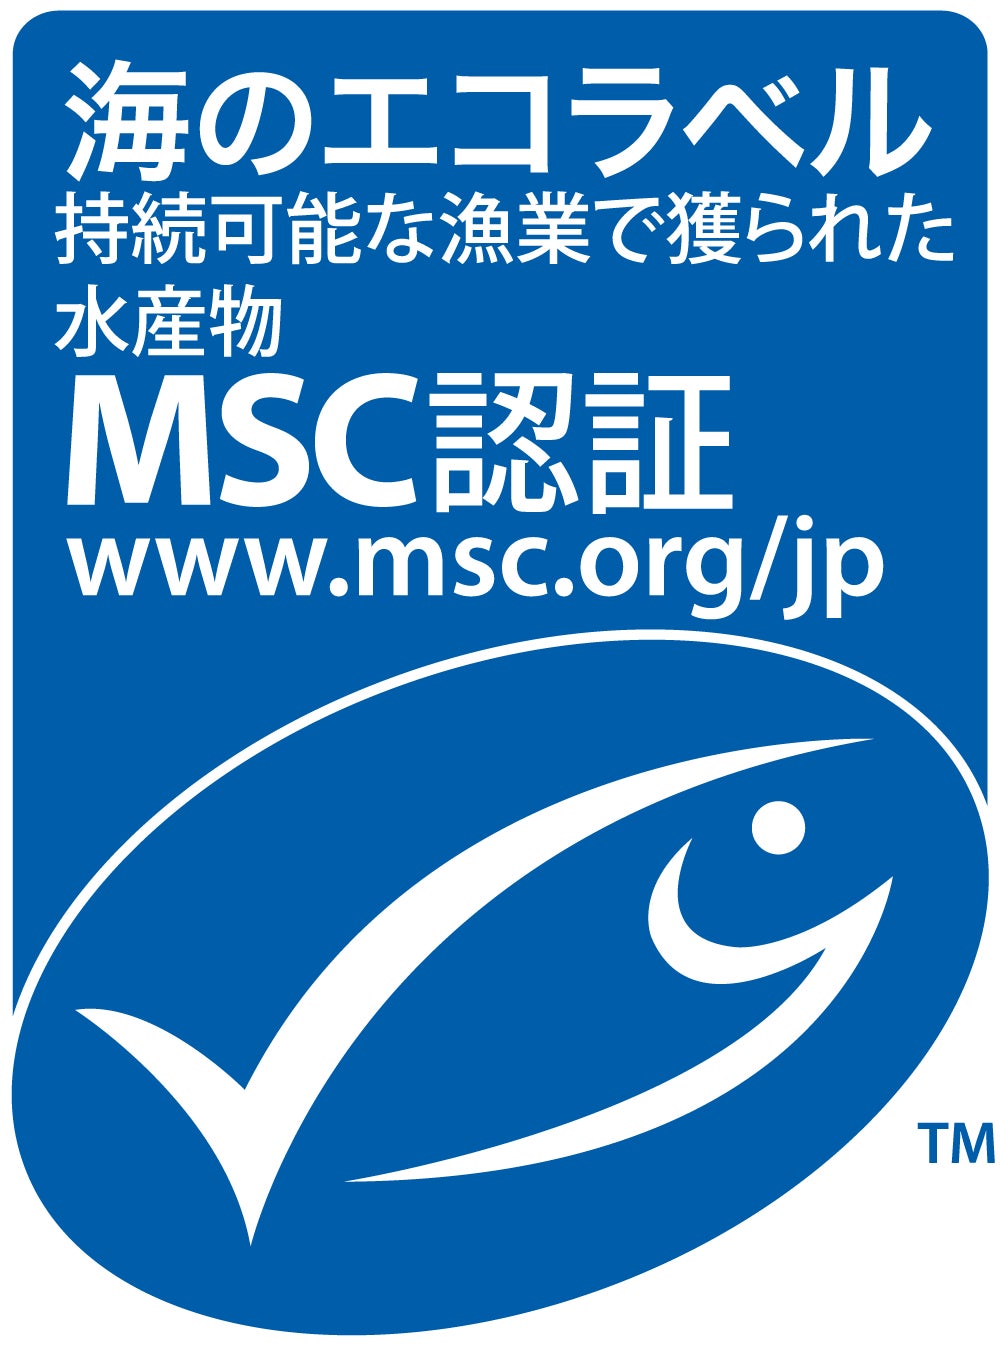 かつお一本釣漁業株式会社がカツオ・ビンナガマグロ一本釣り漁業でMSC漁業認証を取得のサブ画像1